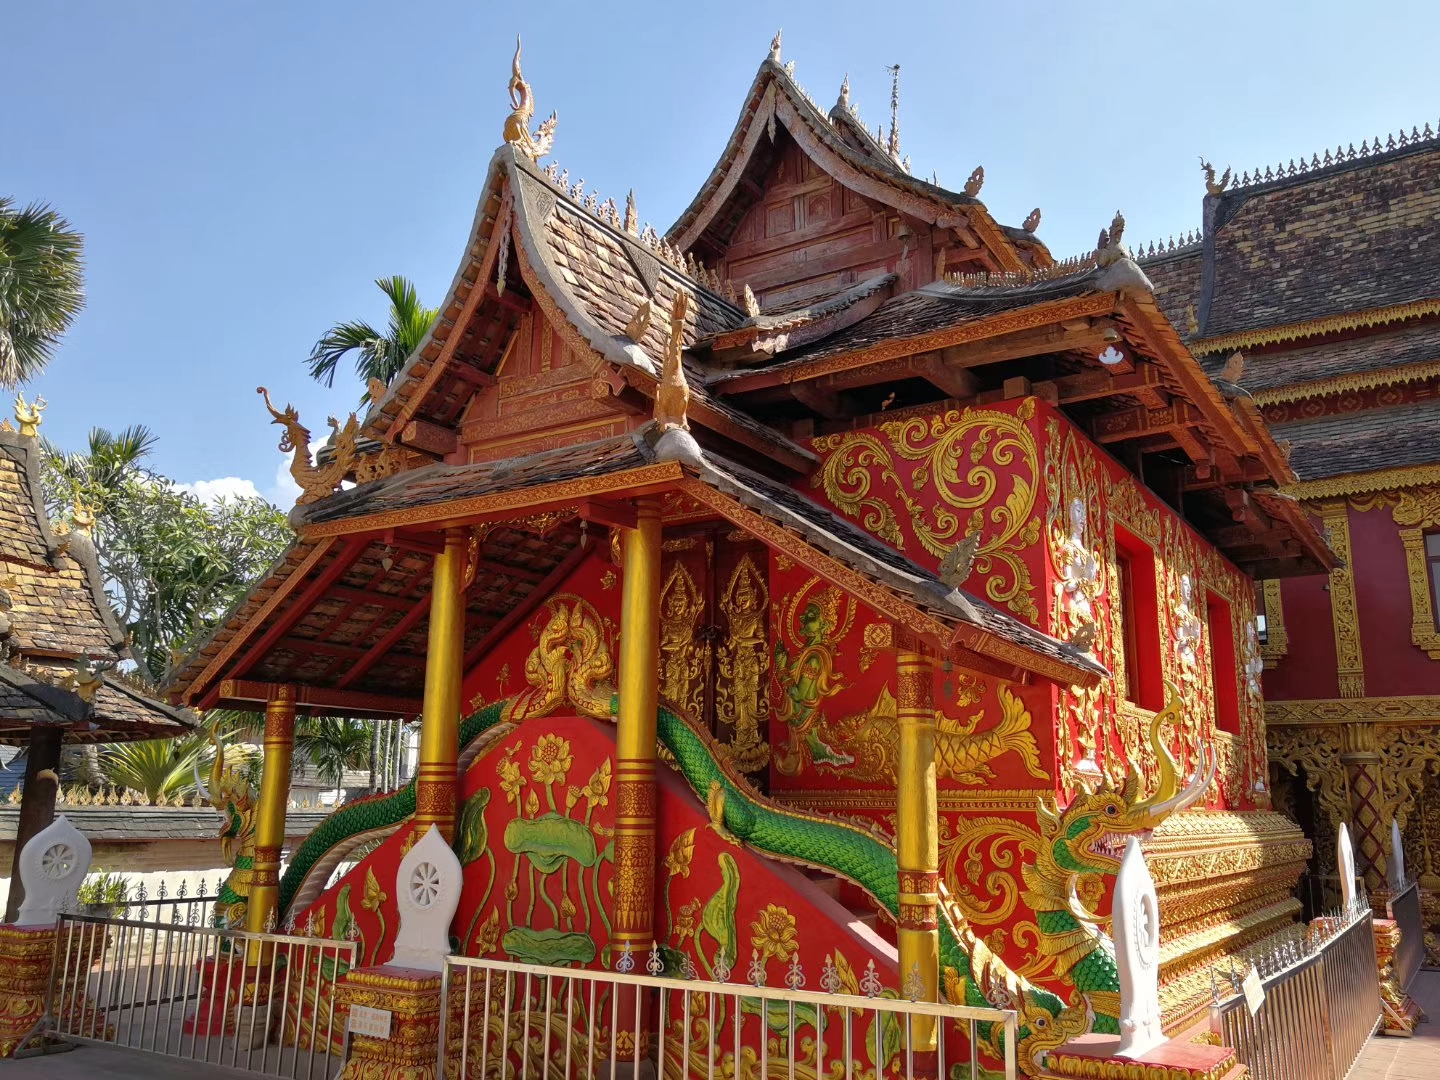 走进傣族园,必去曼春满佛寺这是一座历史悠久的古寺庙,国家重点文物